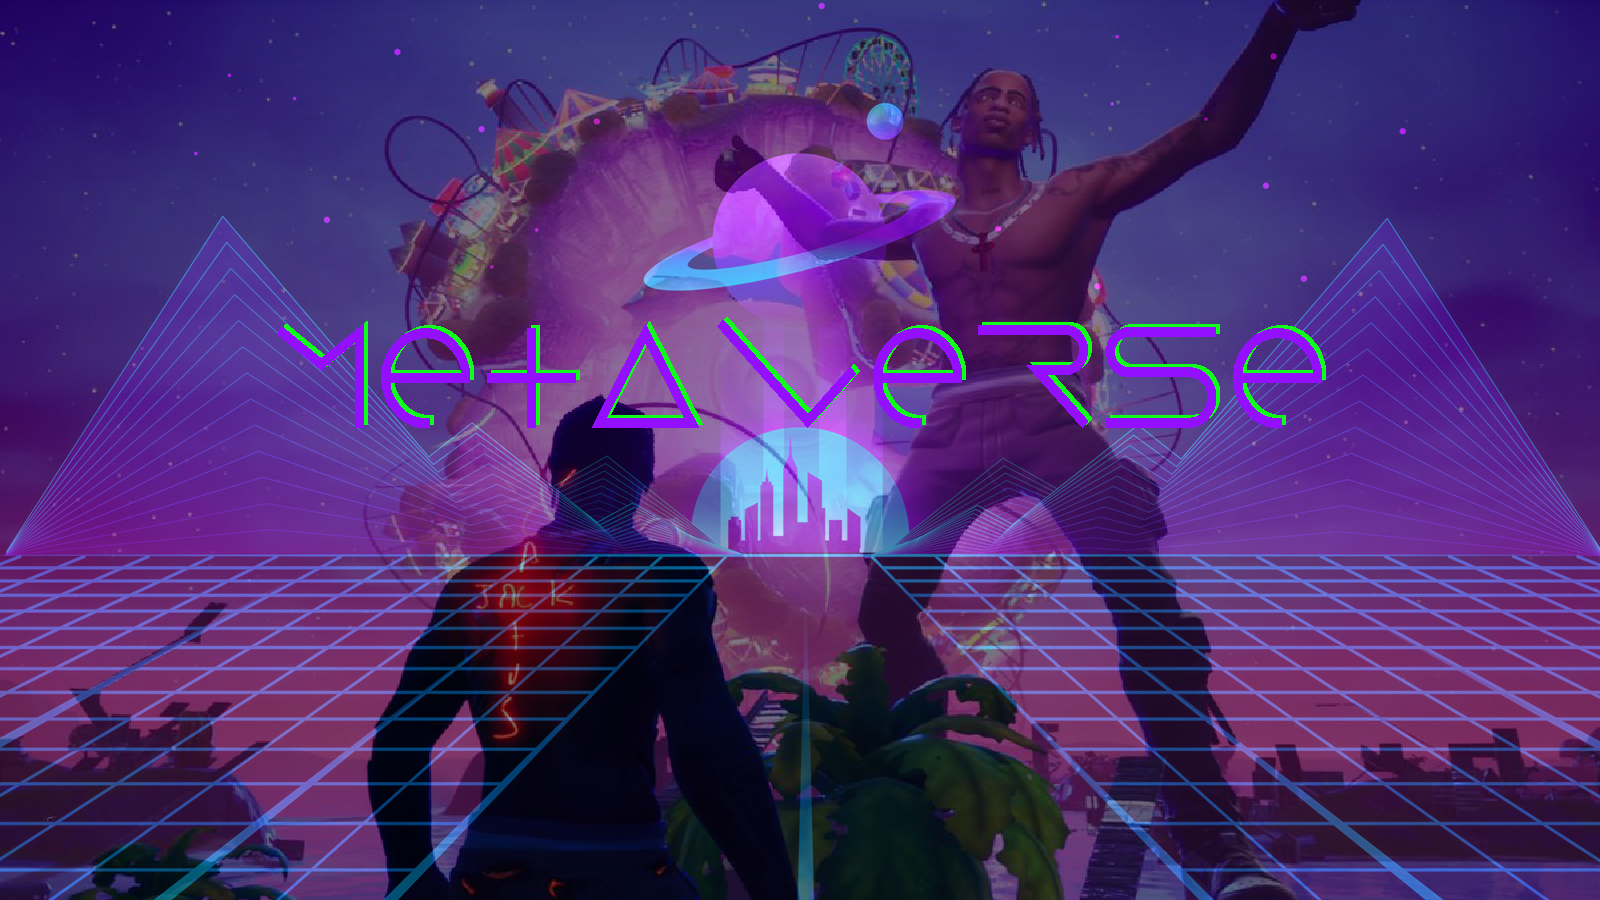 图片展示了一个虚拟现实场景，有一个人物站立在前景，背景是紫色调的天空，上方有